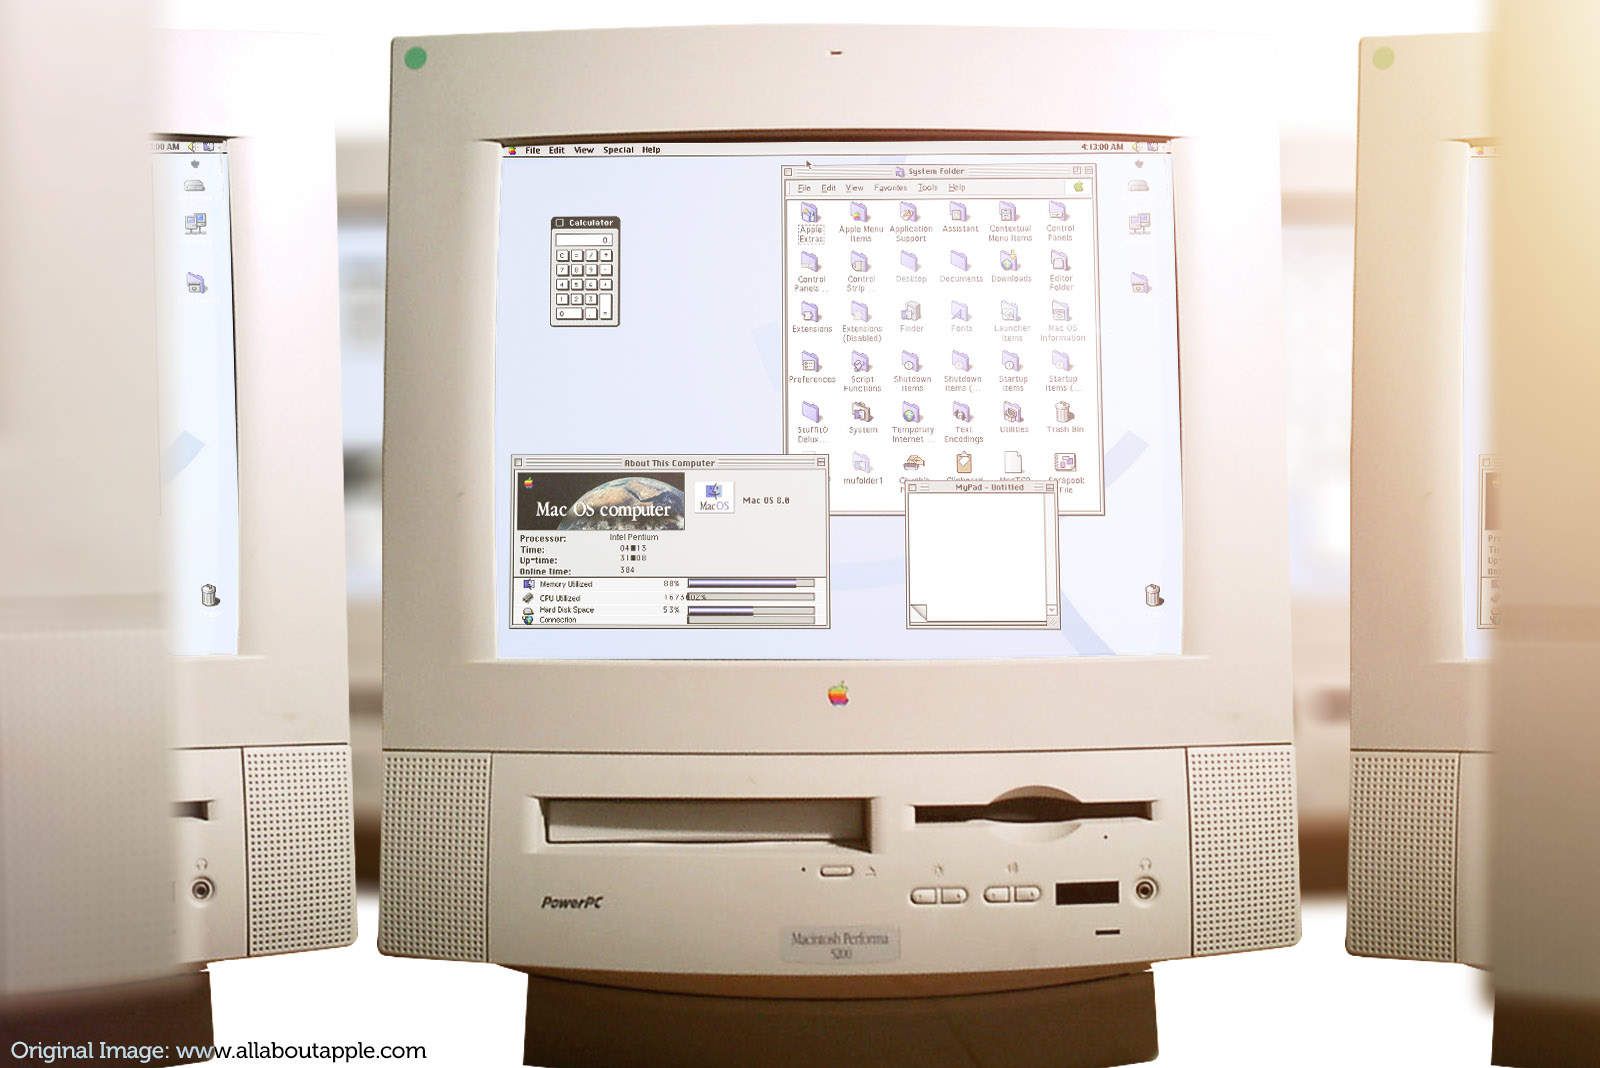 Этот день в истории Apple: выпуск Mac OS 8 стал сюрпризом для производителей клонов Mac